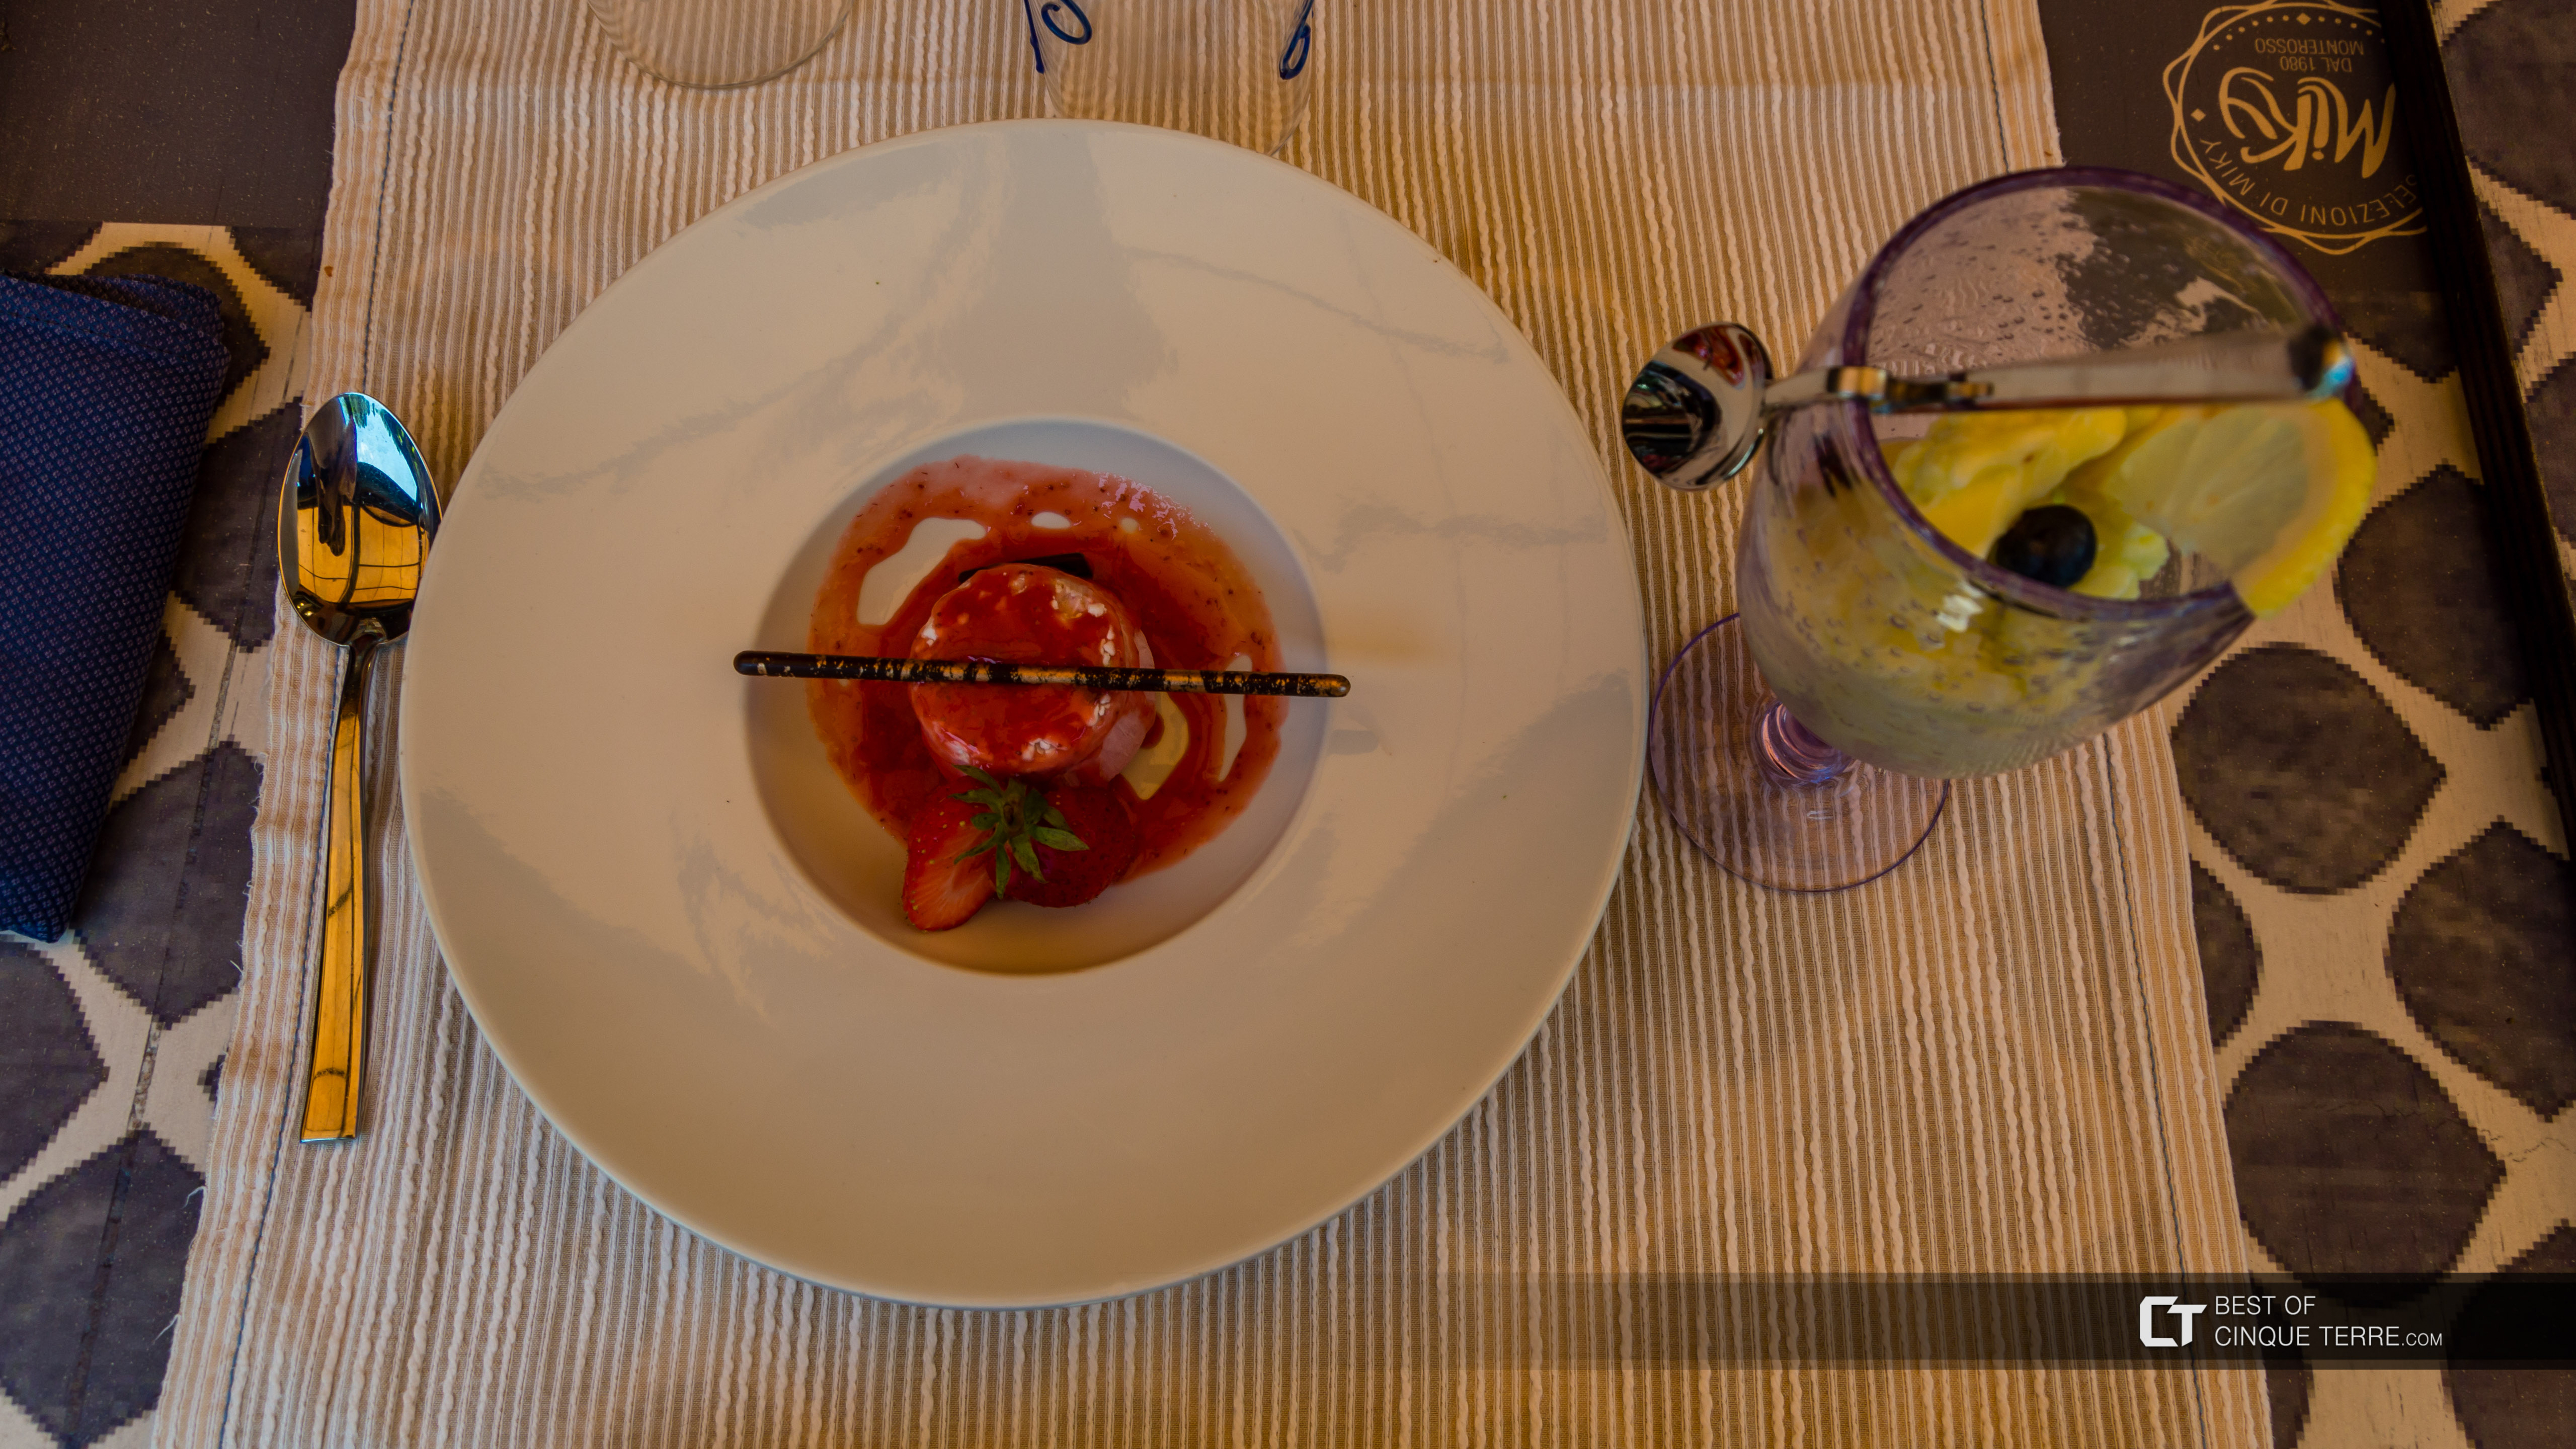 Postres: semifreddo de frambuesa y sorbete de limón (restaurante Miky, Monterosso al Mare), Comida local, Cinque Terre, Italia